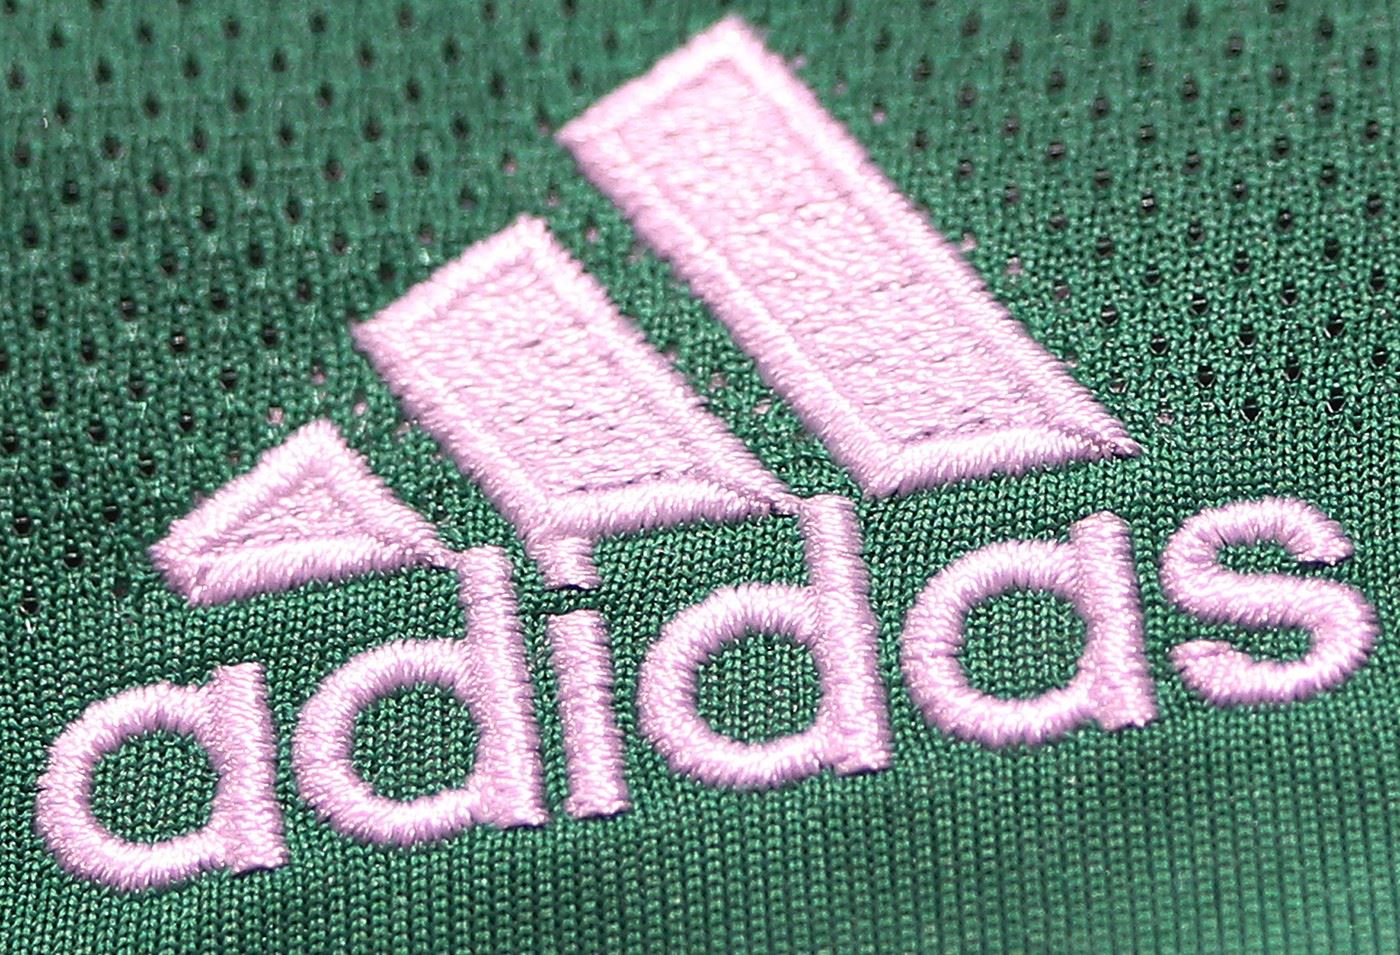 Žádné číslo 44. Adidas stahuje z prodeje dresy připomínající nacistickou symboliku